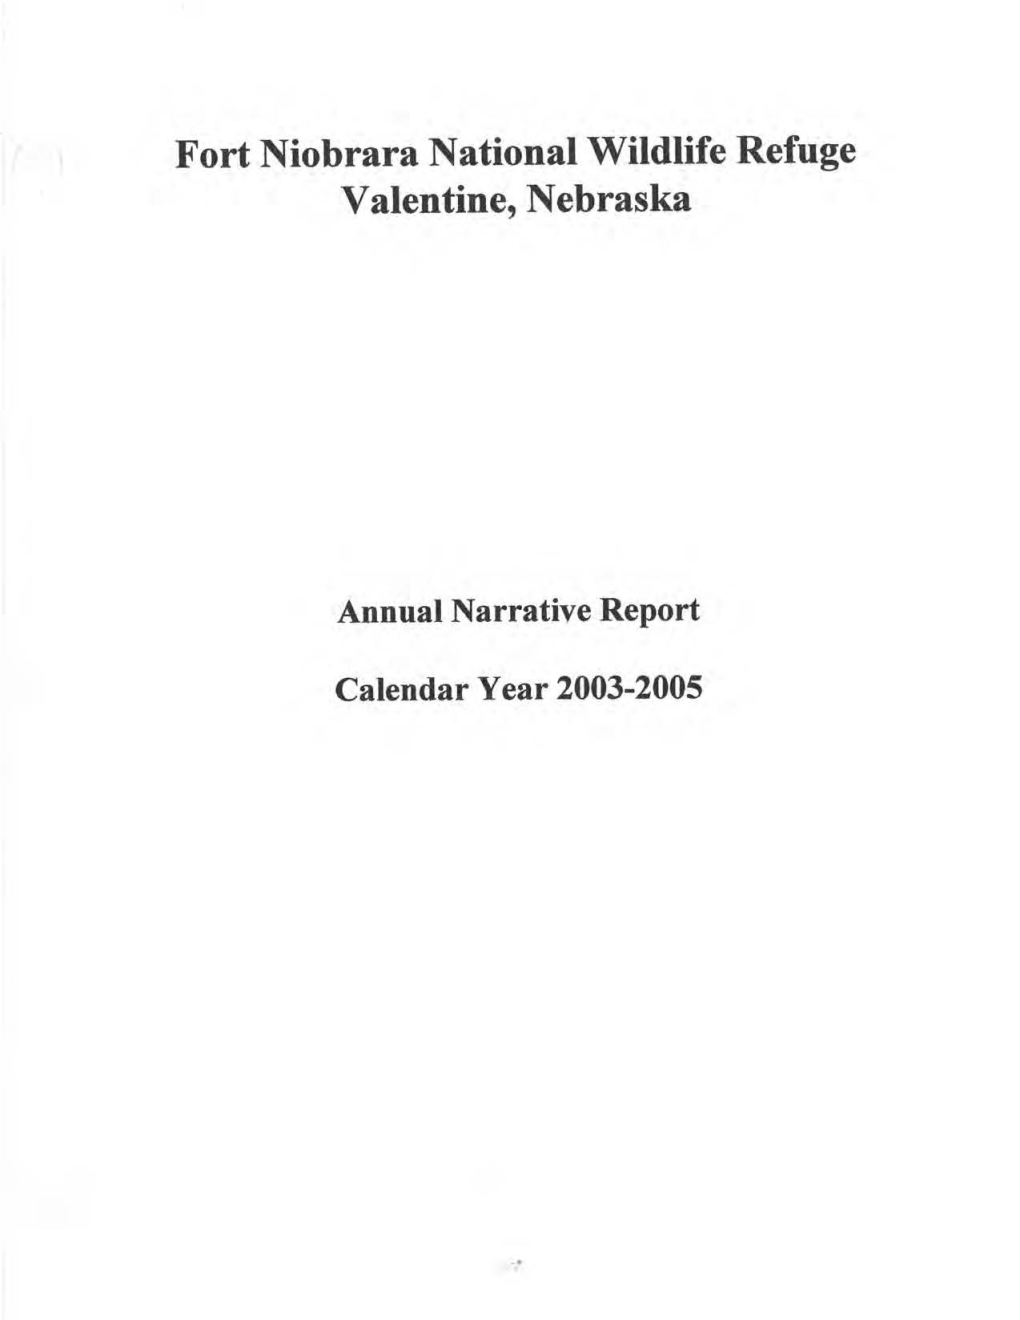 Fort Niobrara National Wildlife Refuge Valentine, Nebraska